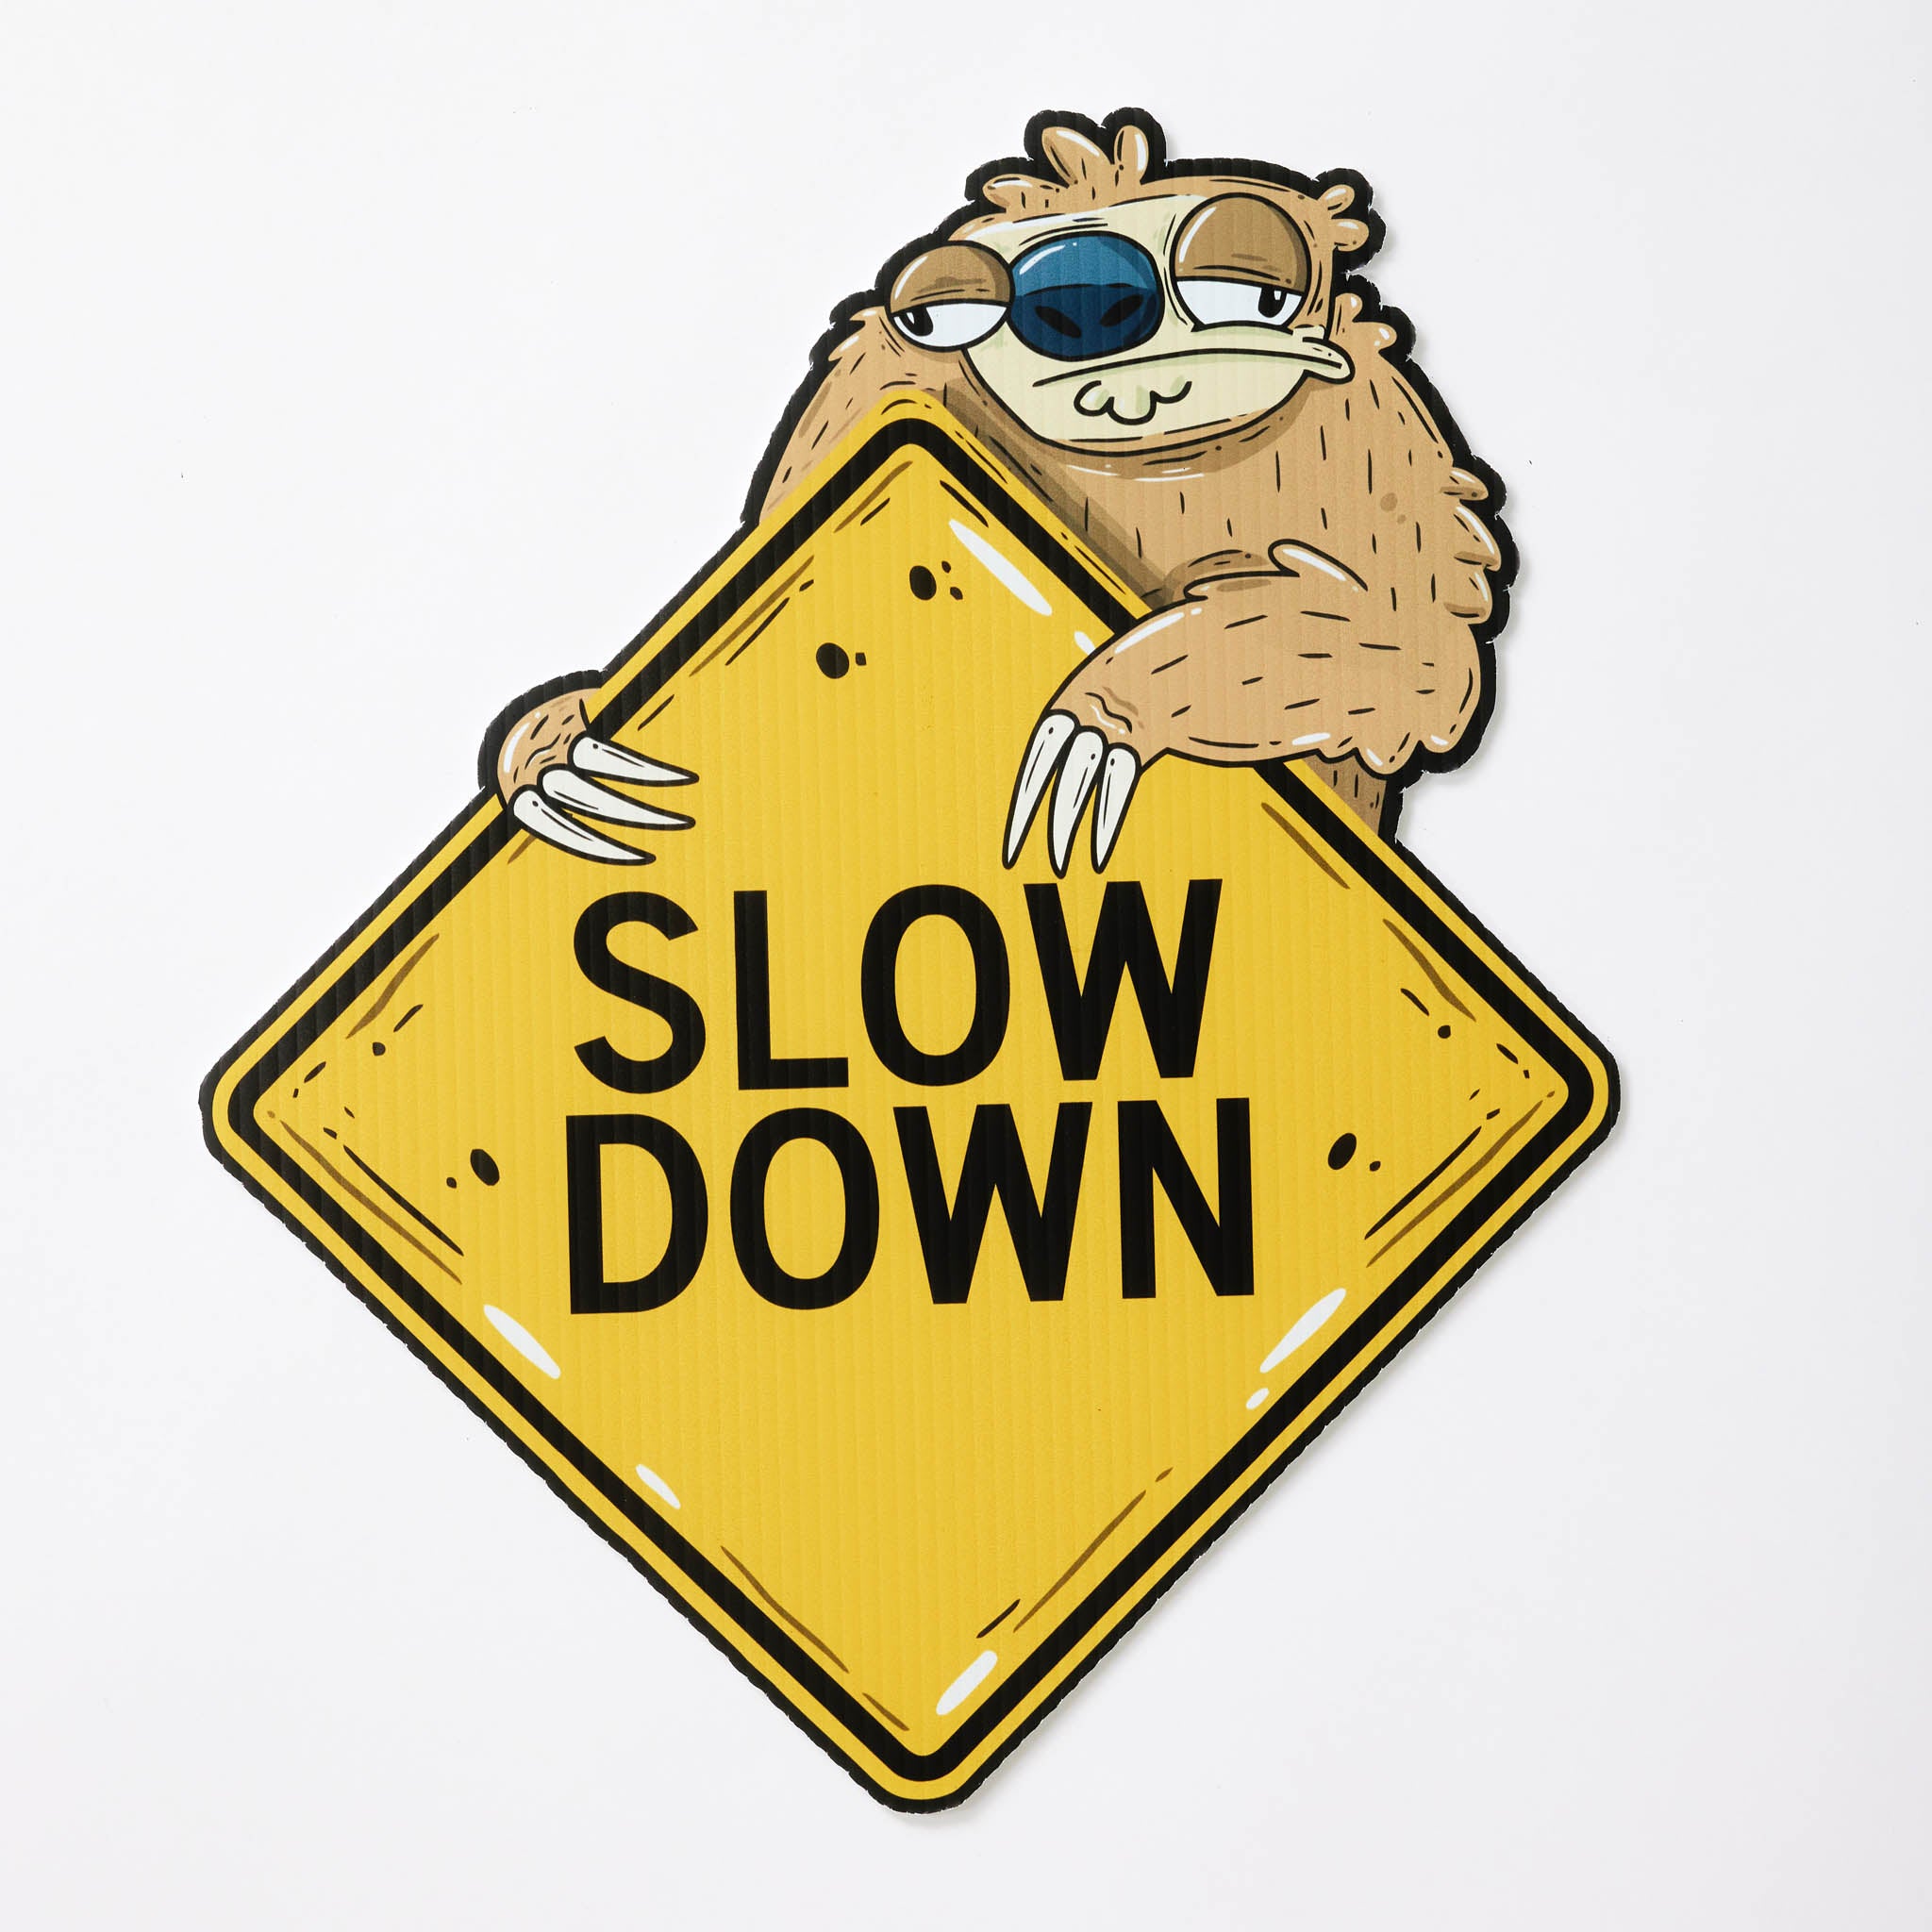 Sofia the Sloth | Mini "Slow Down" Yard Sign